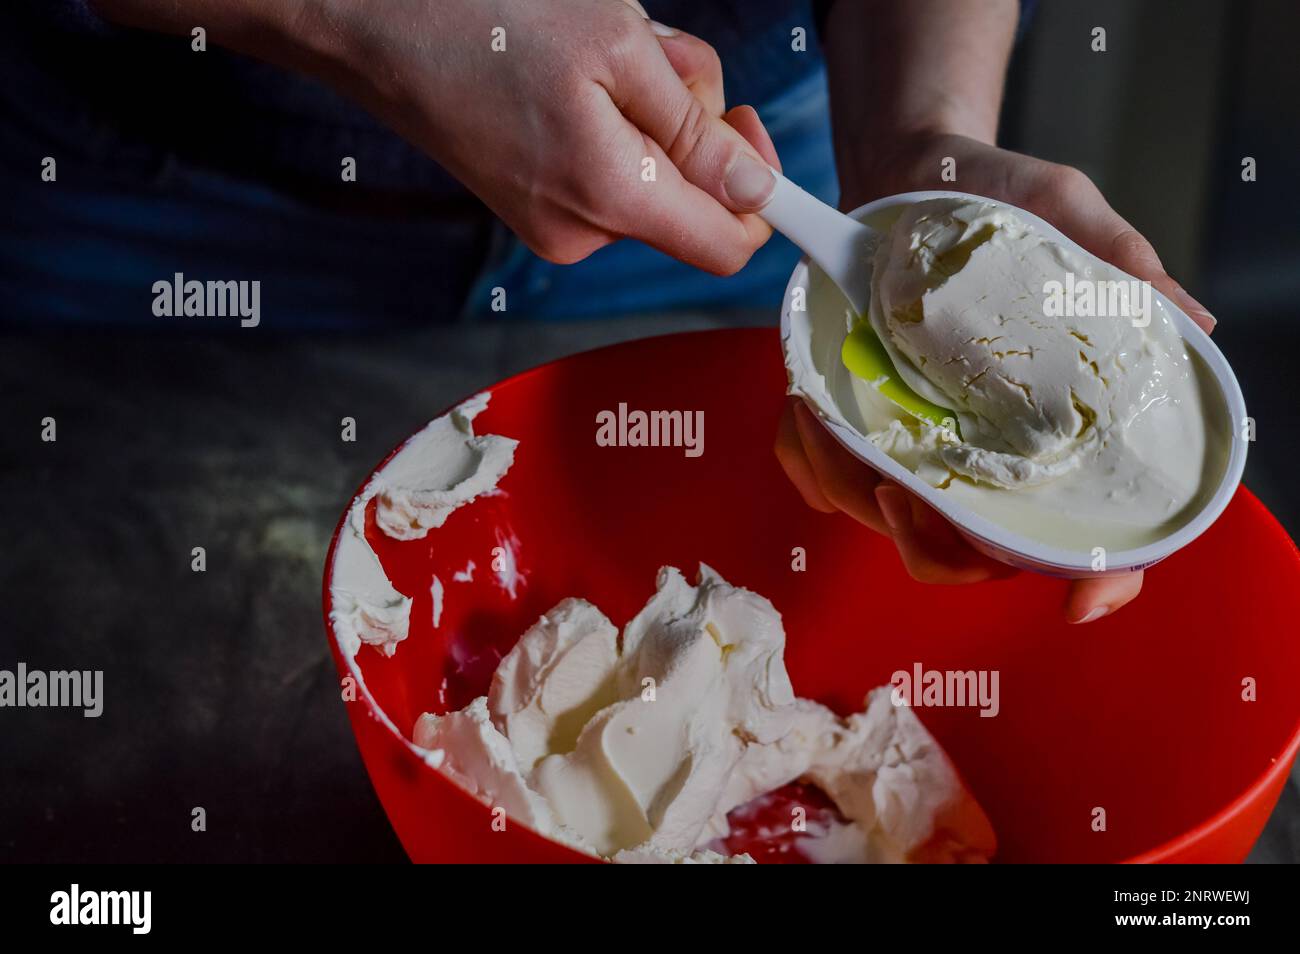 Die Hände entleeren den frischen Weißkäse aus der Verpackung, um ihn zu mischen und einen Käsekuchen zuzubereiten Stockfoto